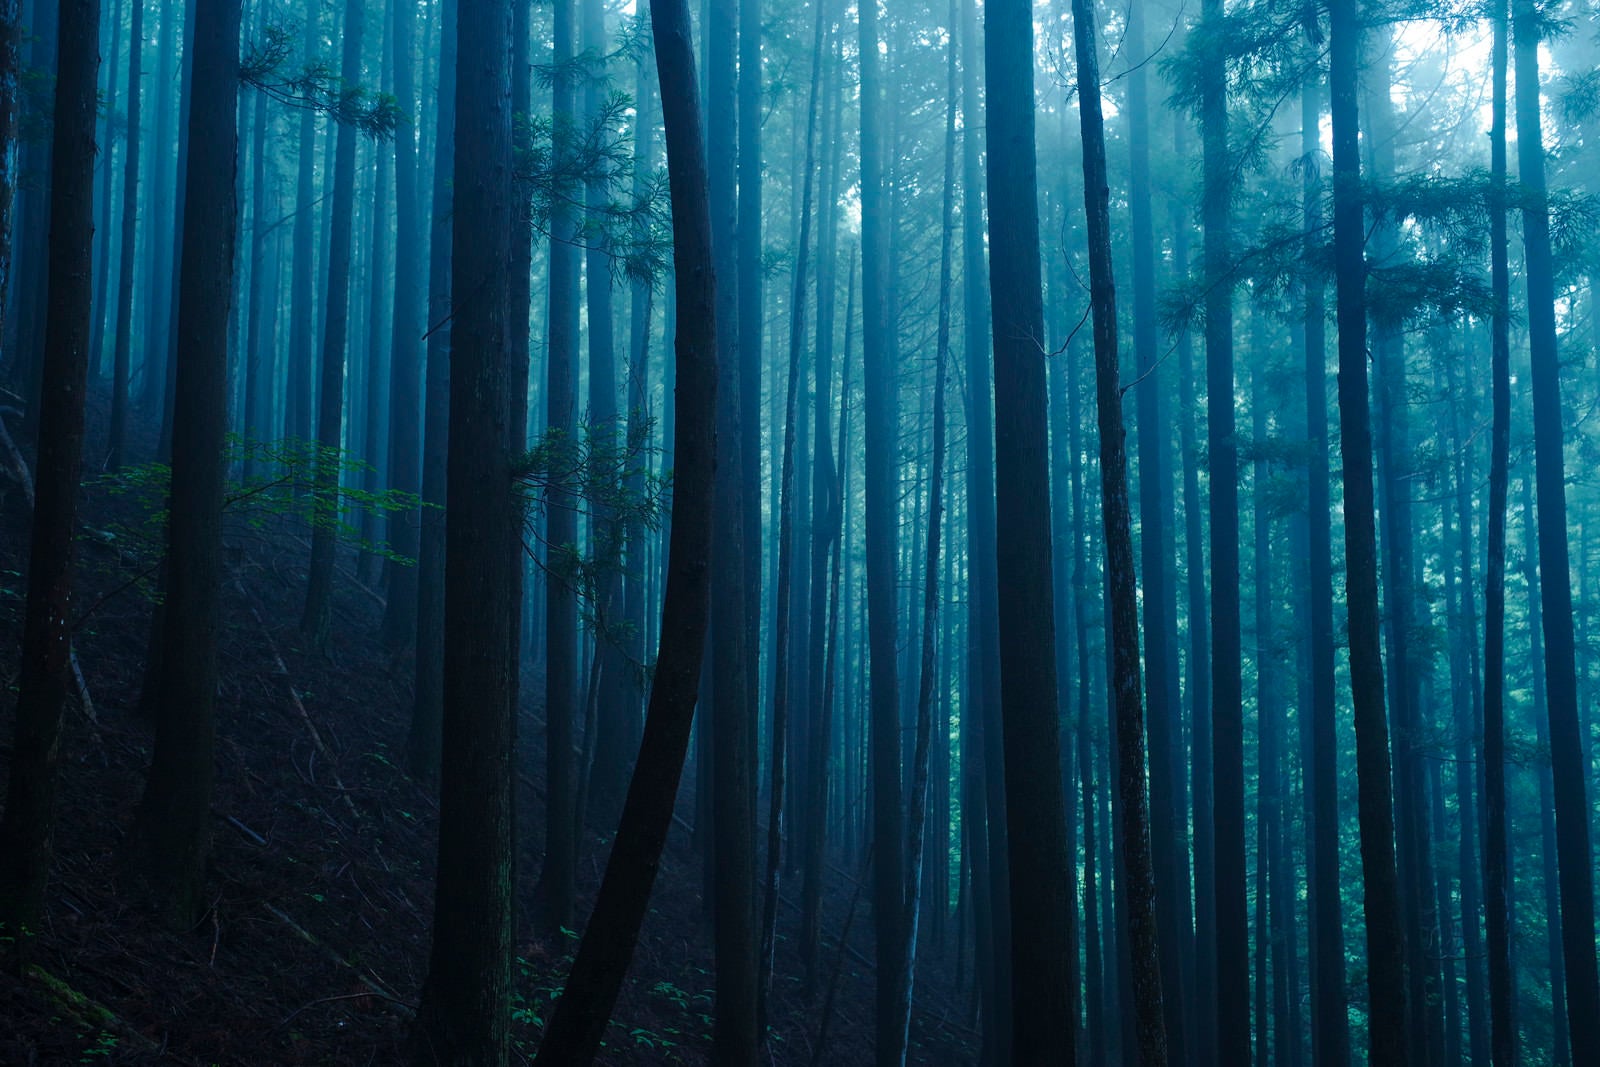 「一本だけ曲がった幹を持つ杉が特徴的な杉林」の写真